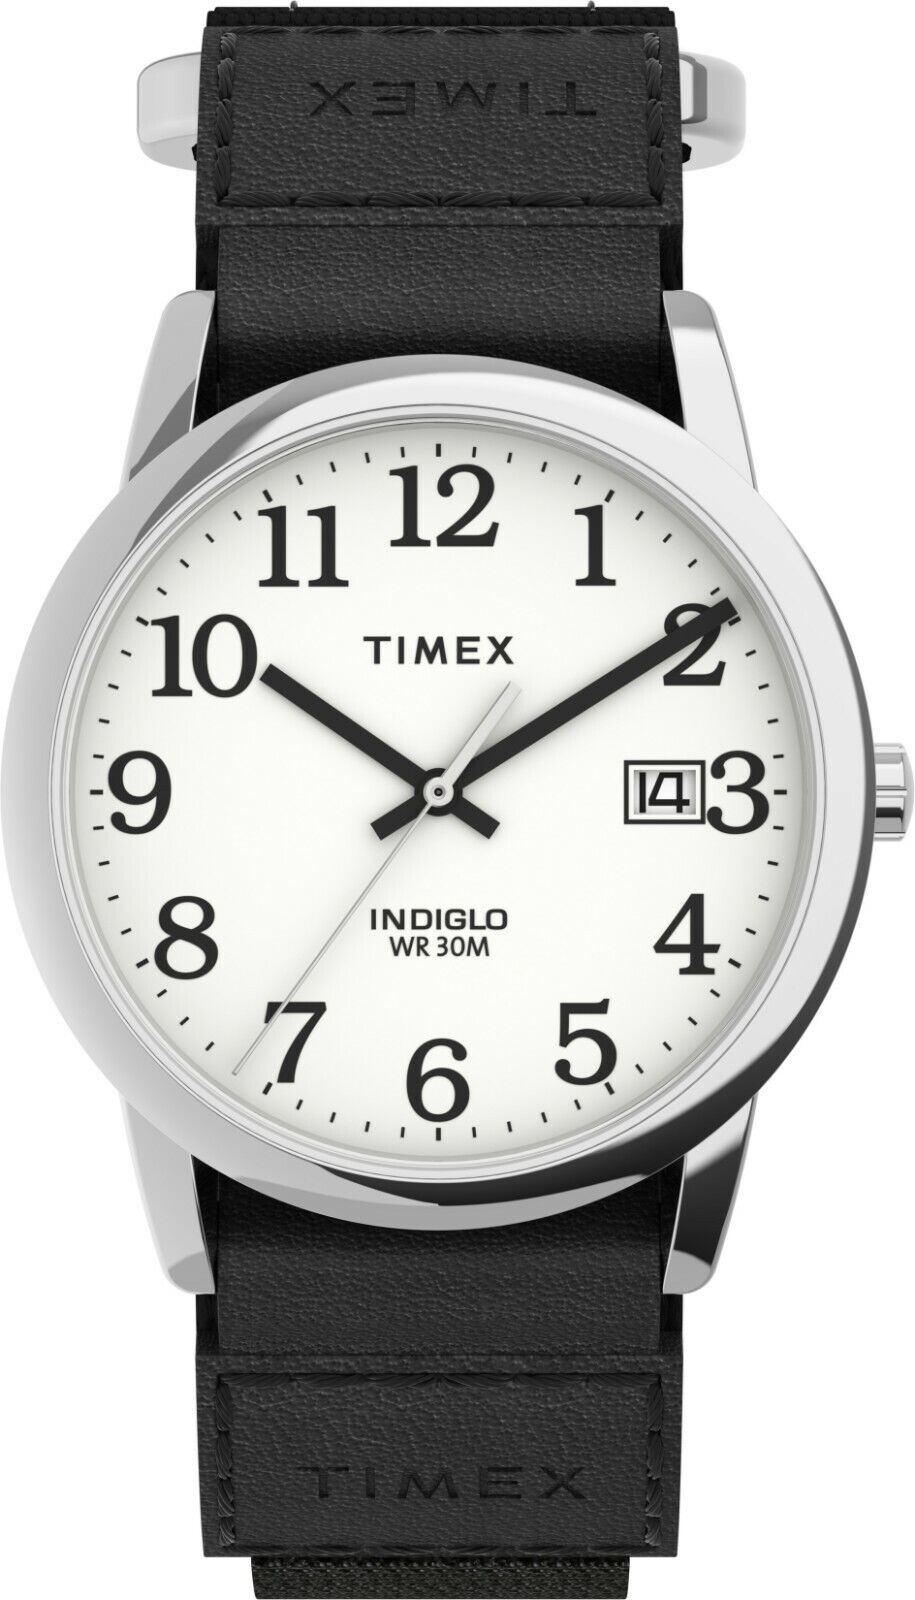 Timex TW2U84900, мужские часы Easy Reader с черным нейлоновым ремешком, индиго, дата